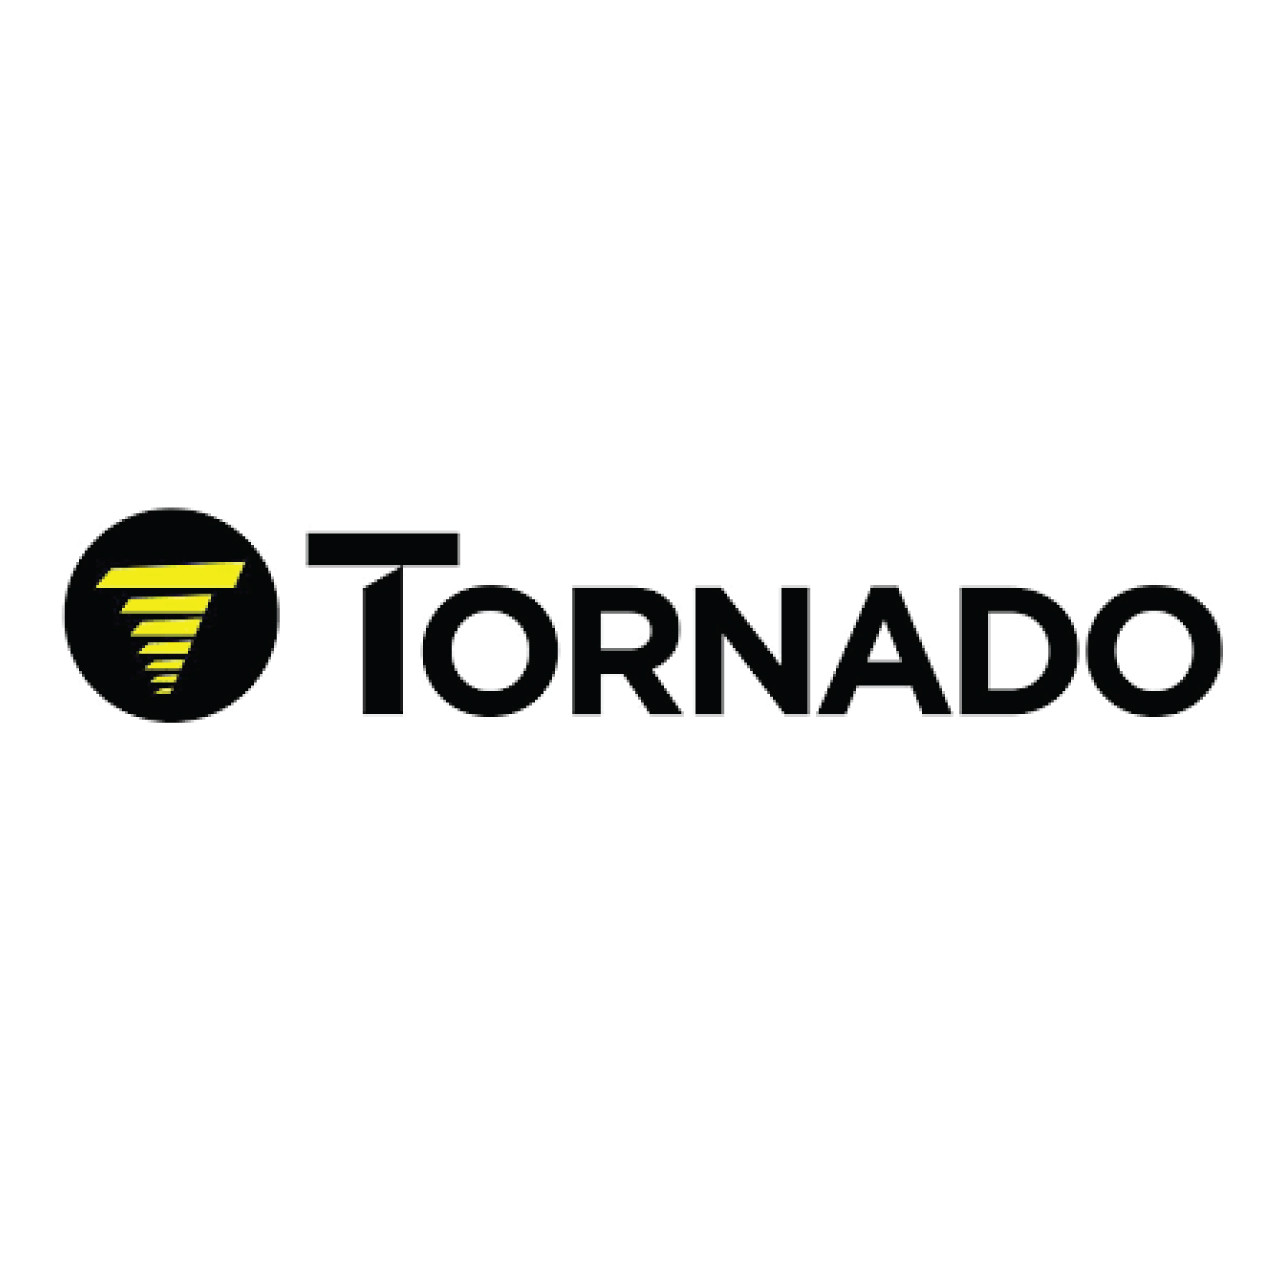 46230080, Tornado 46230080, Tornado MOTOR METAL, Tornado parts